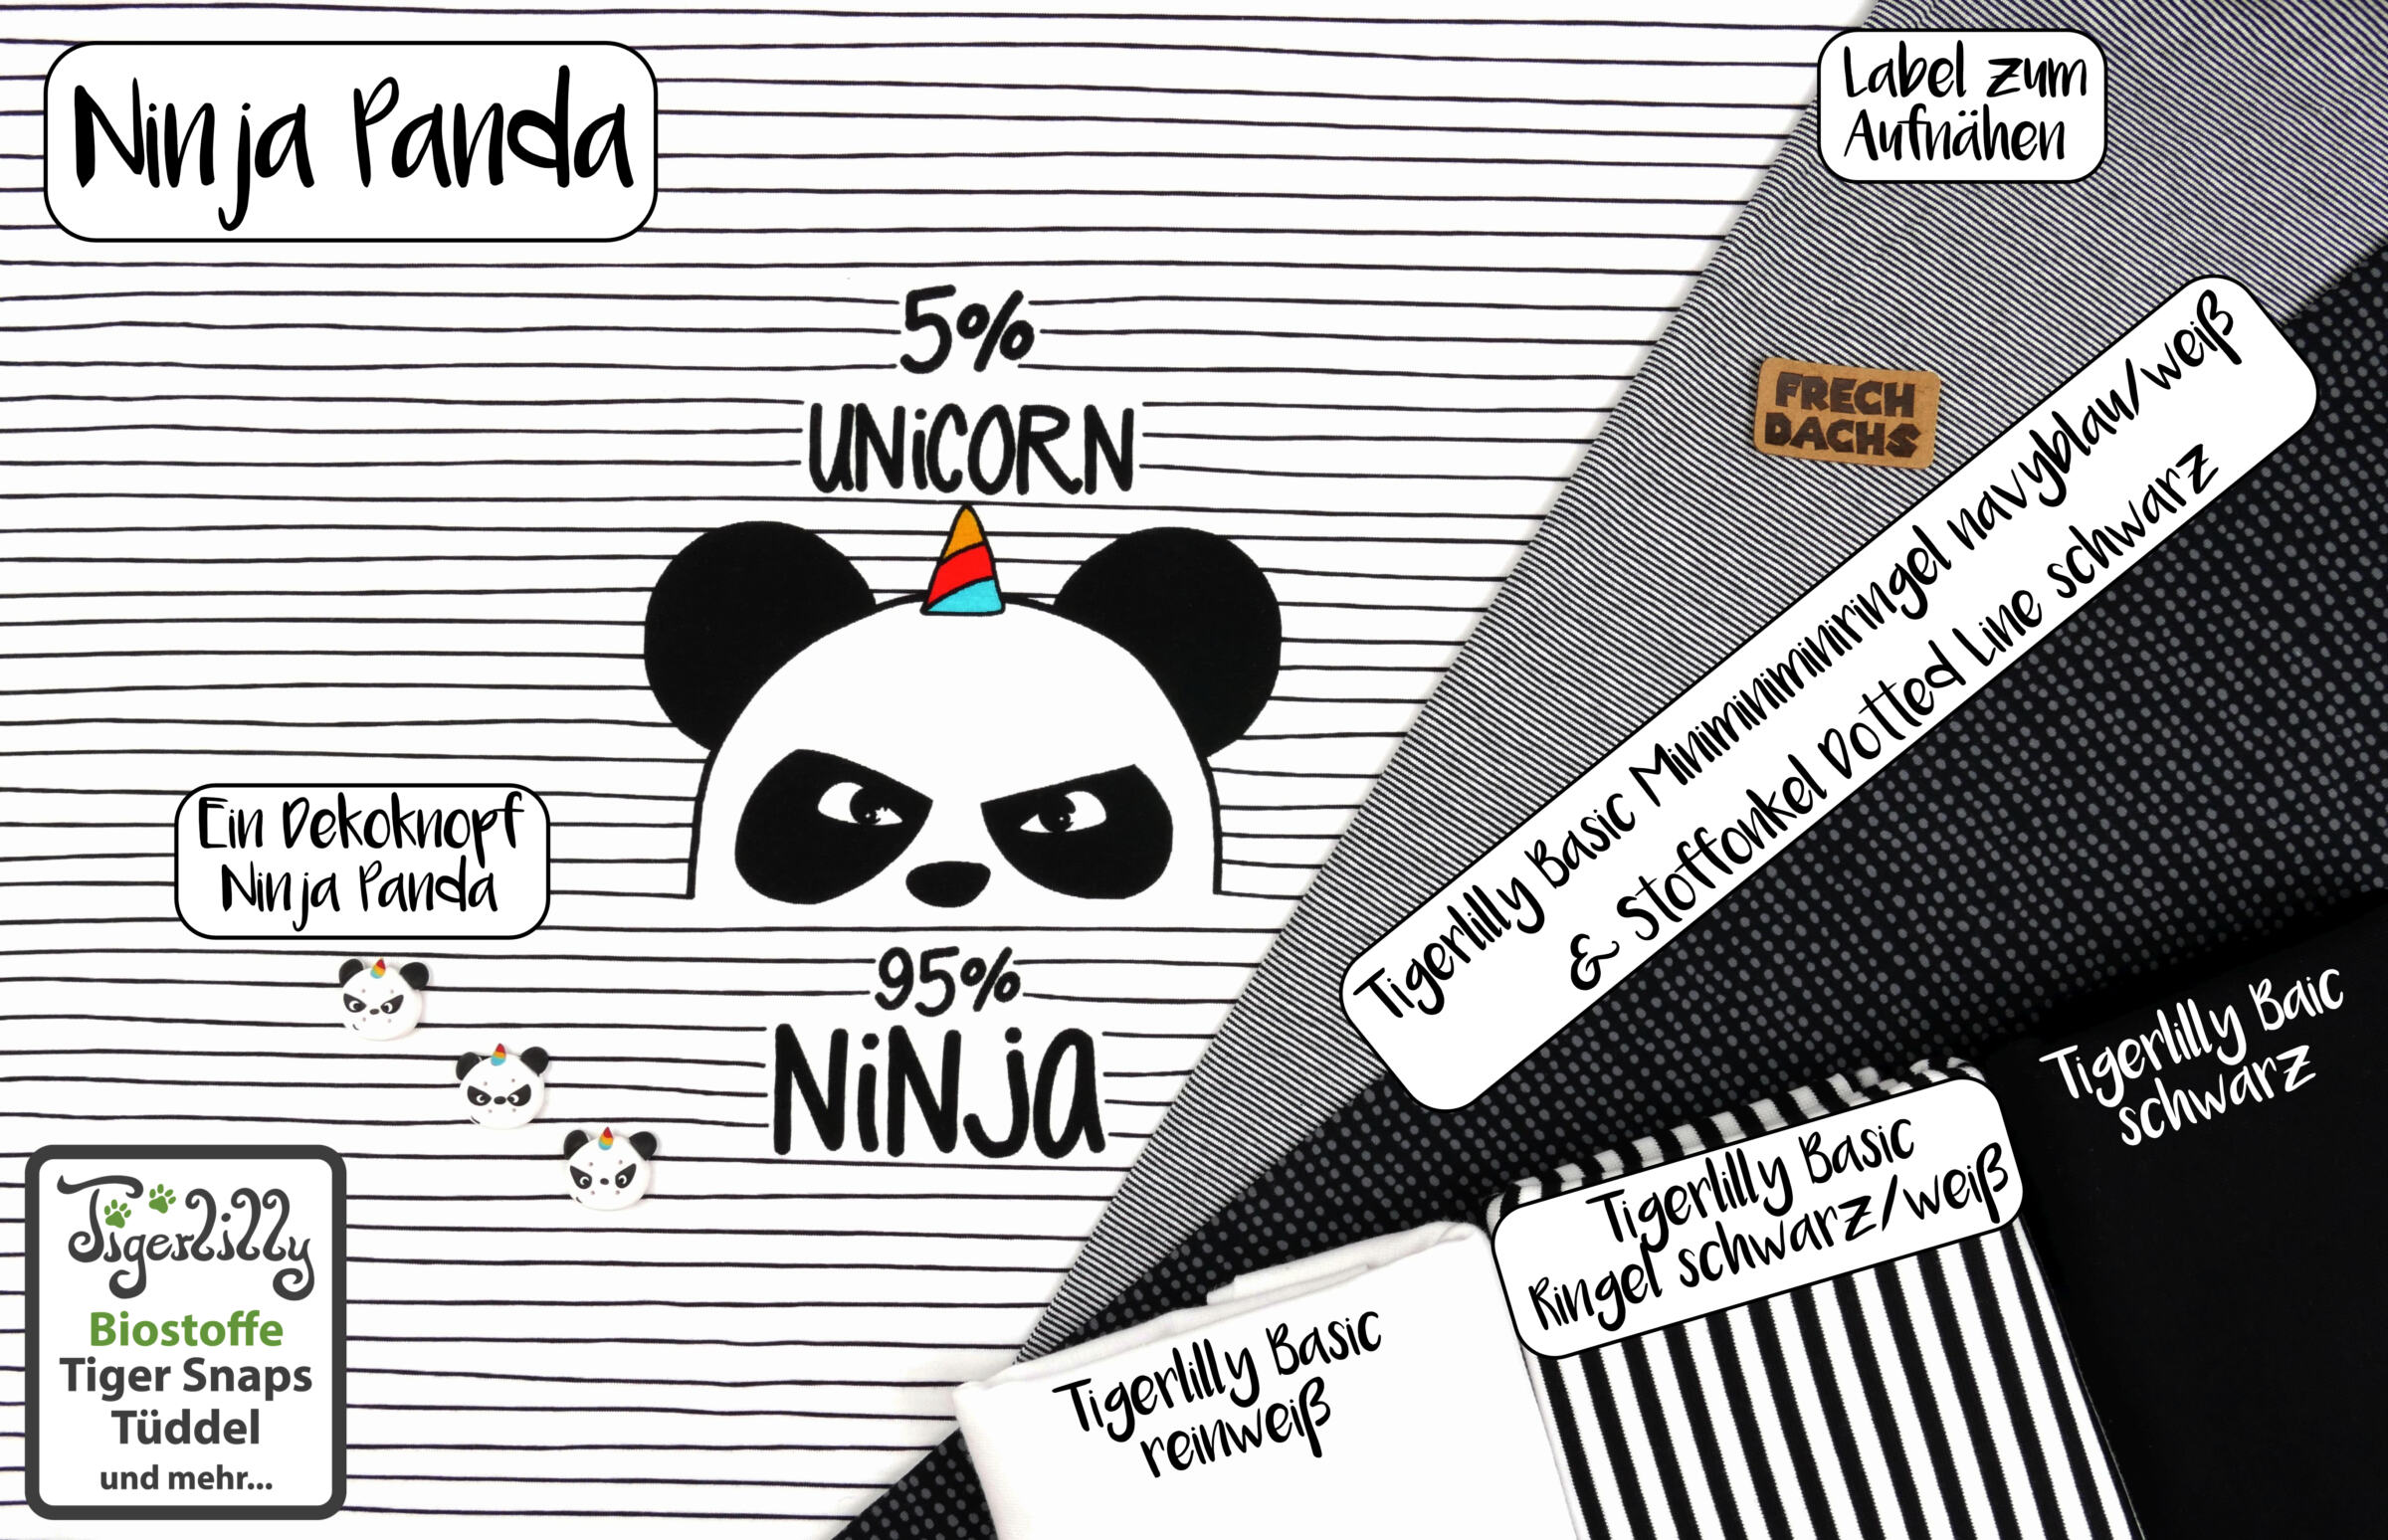 Ninja Panda